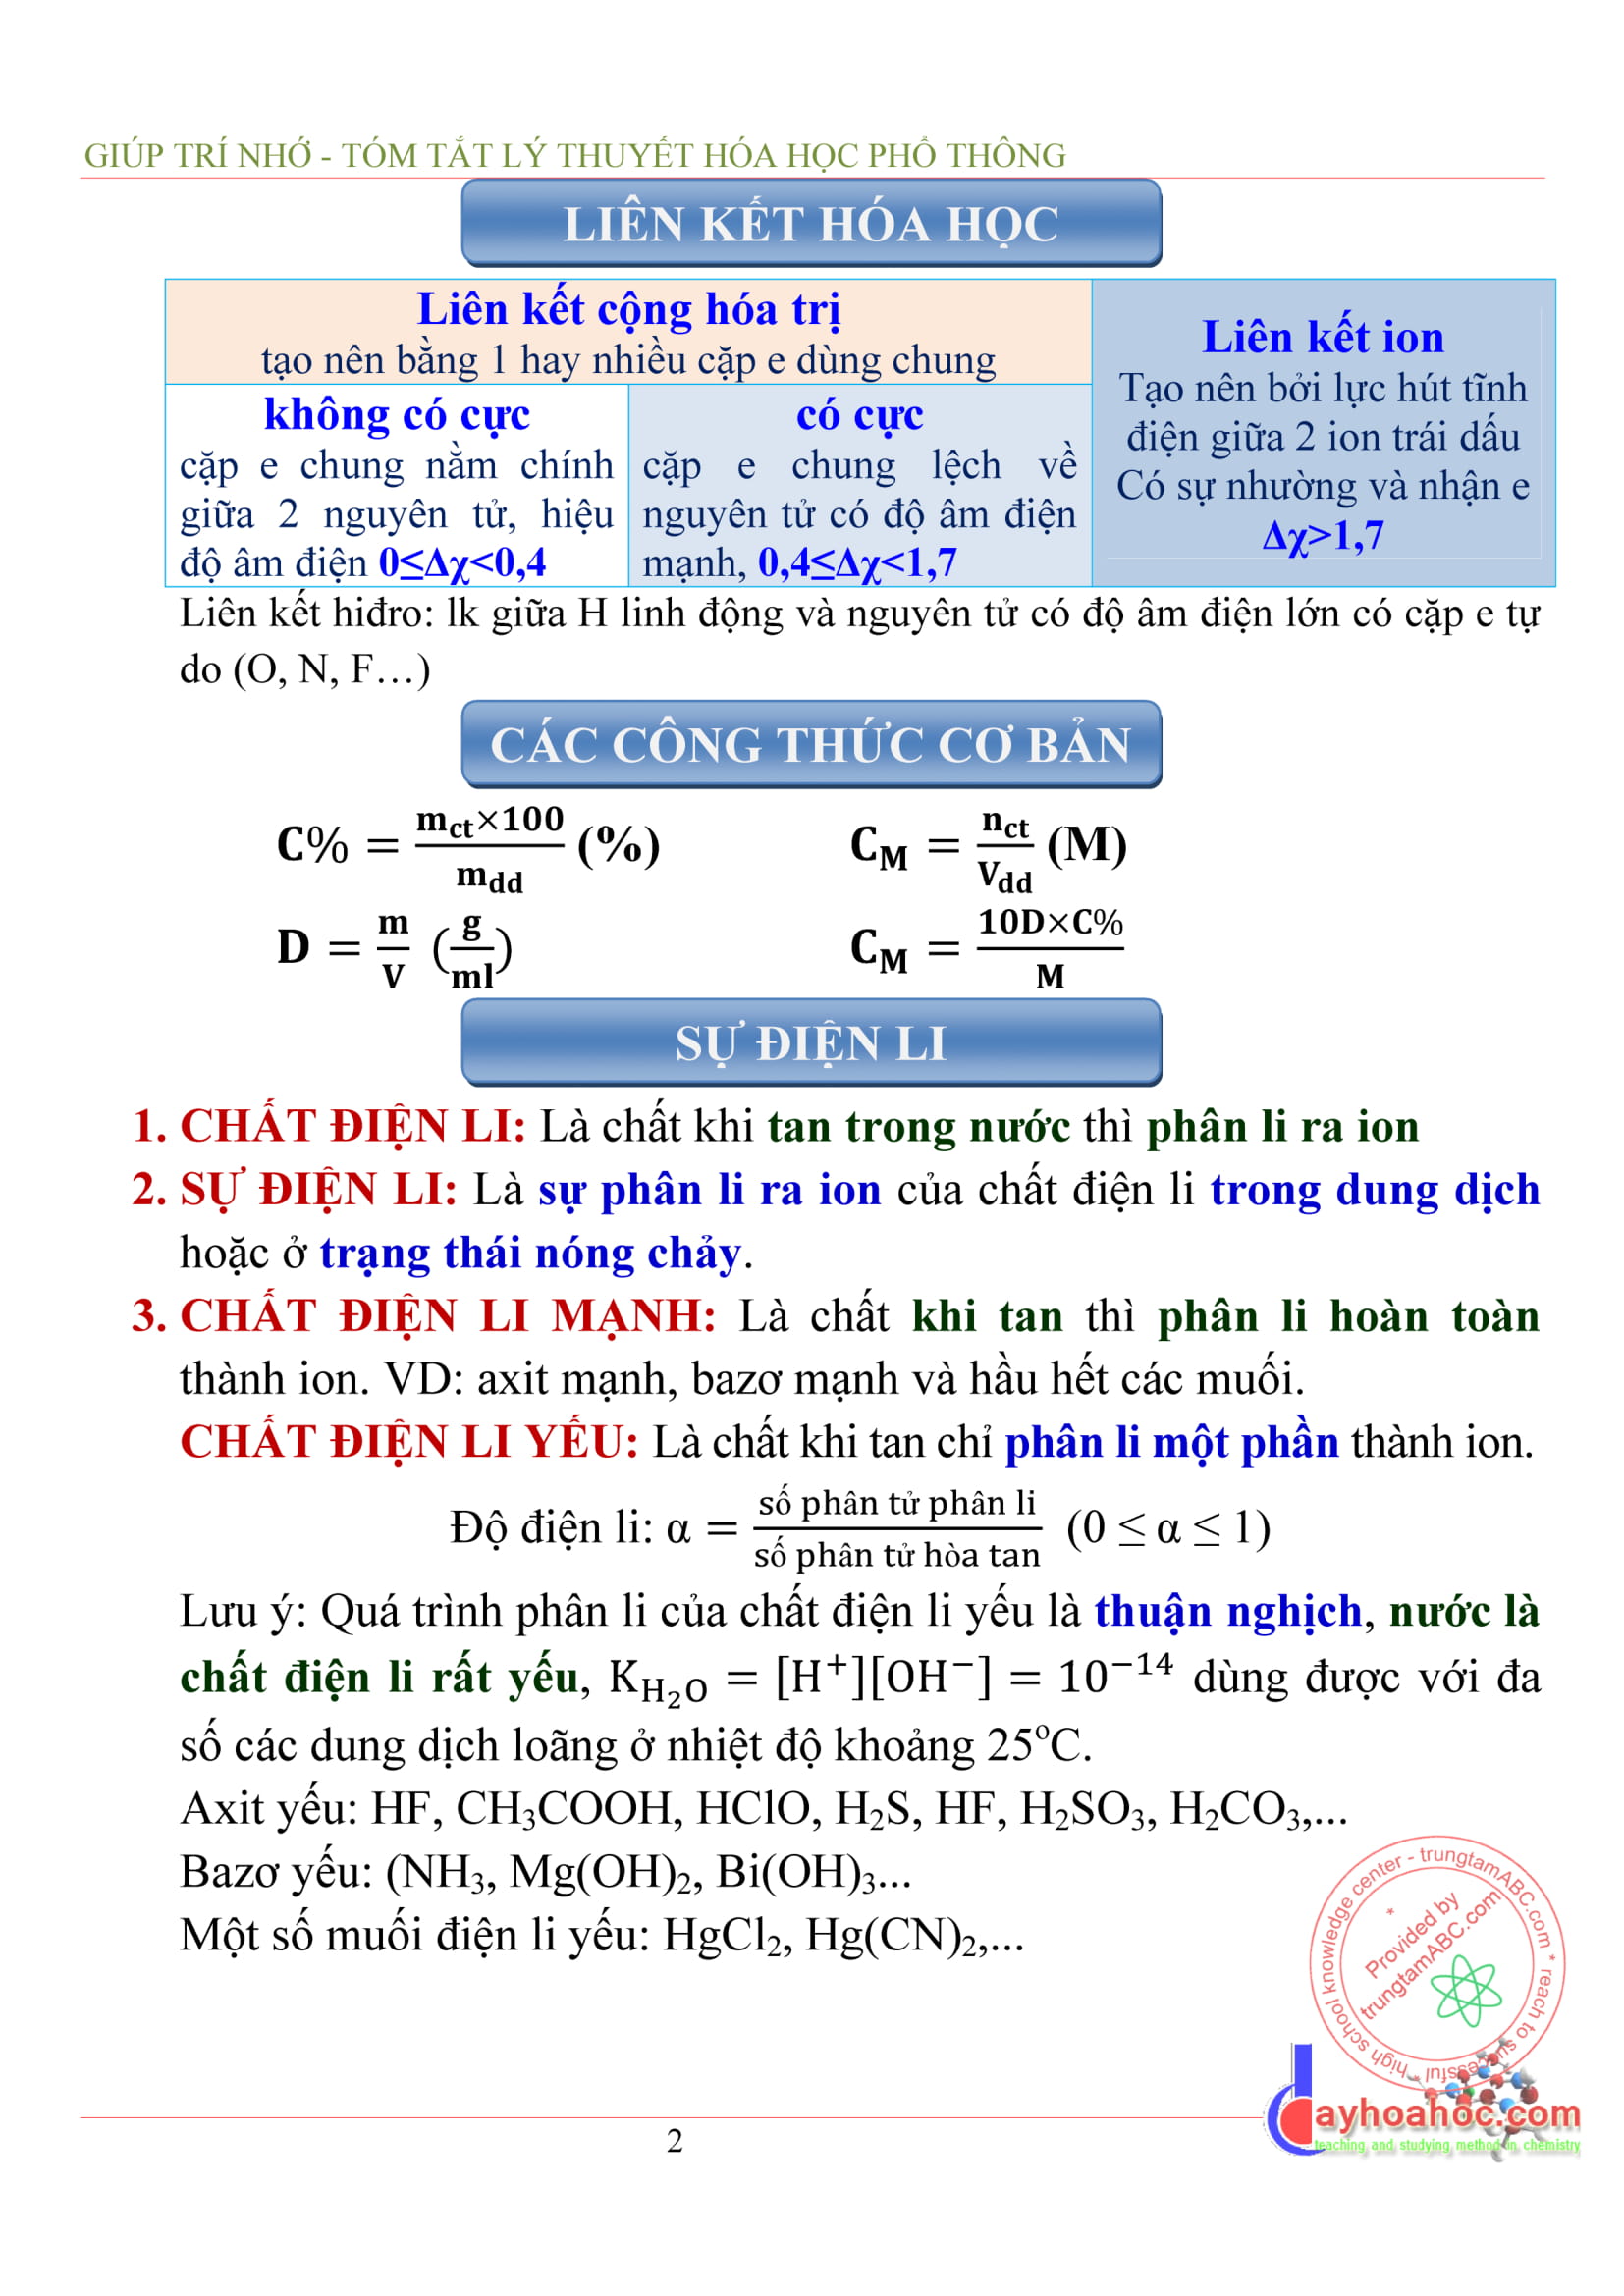 Tóm tắt lý thuyết hóa vô cơ tổng hợp - Hóa 12